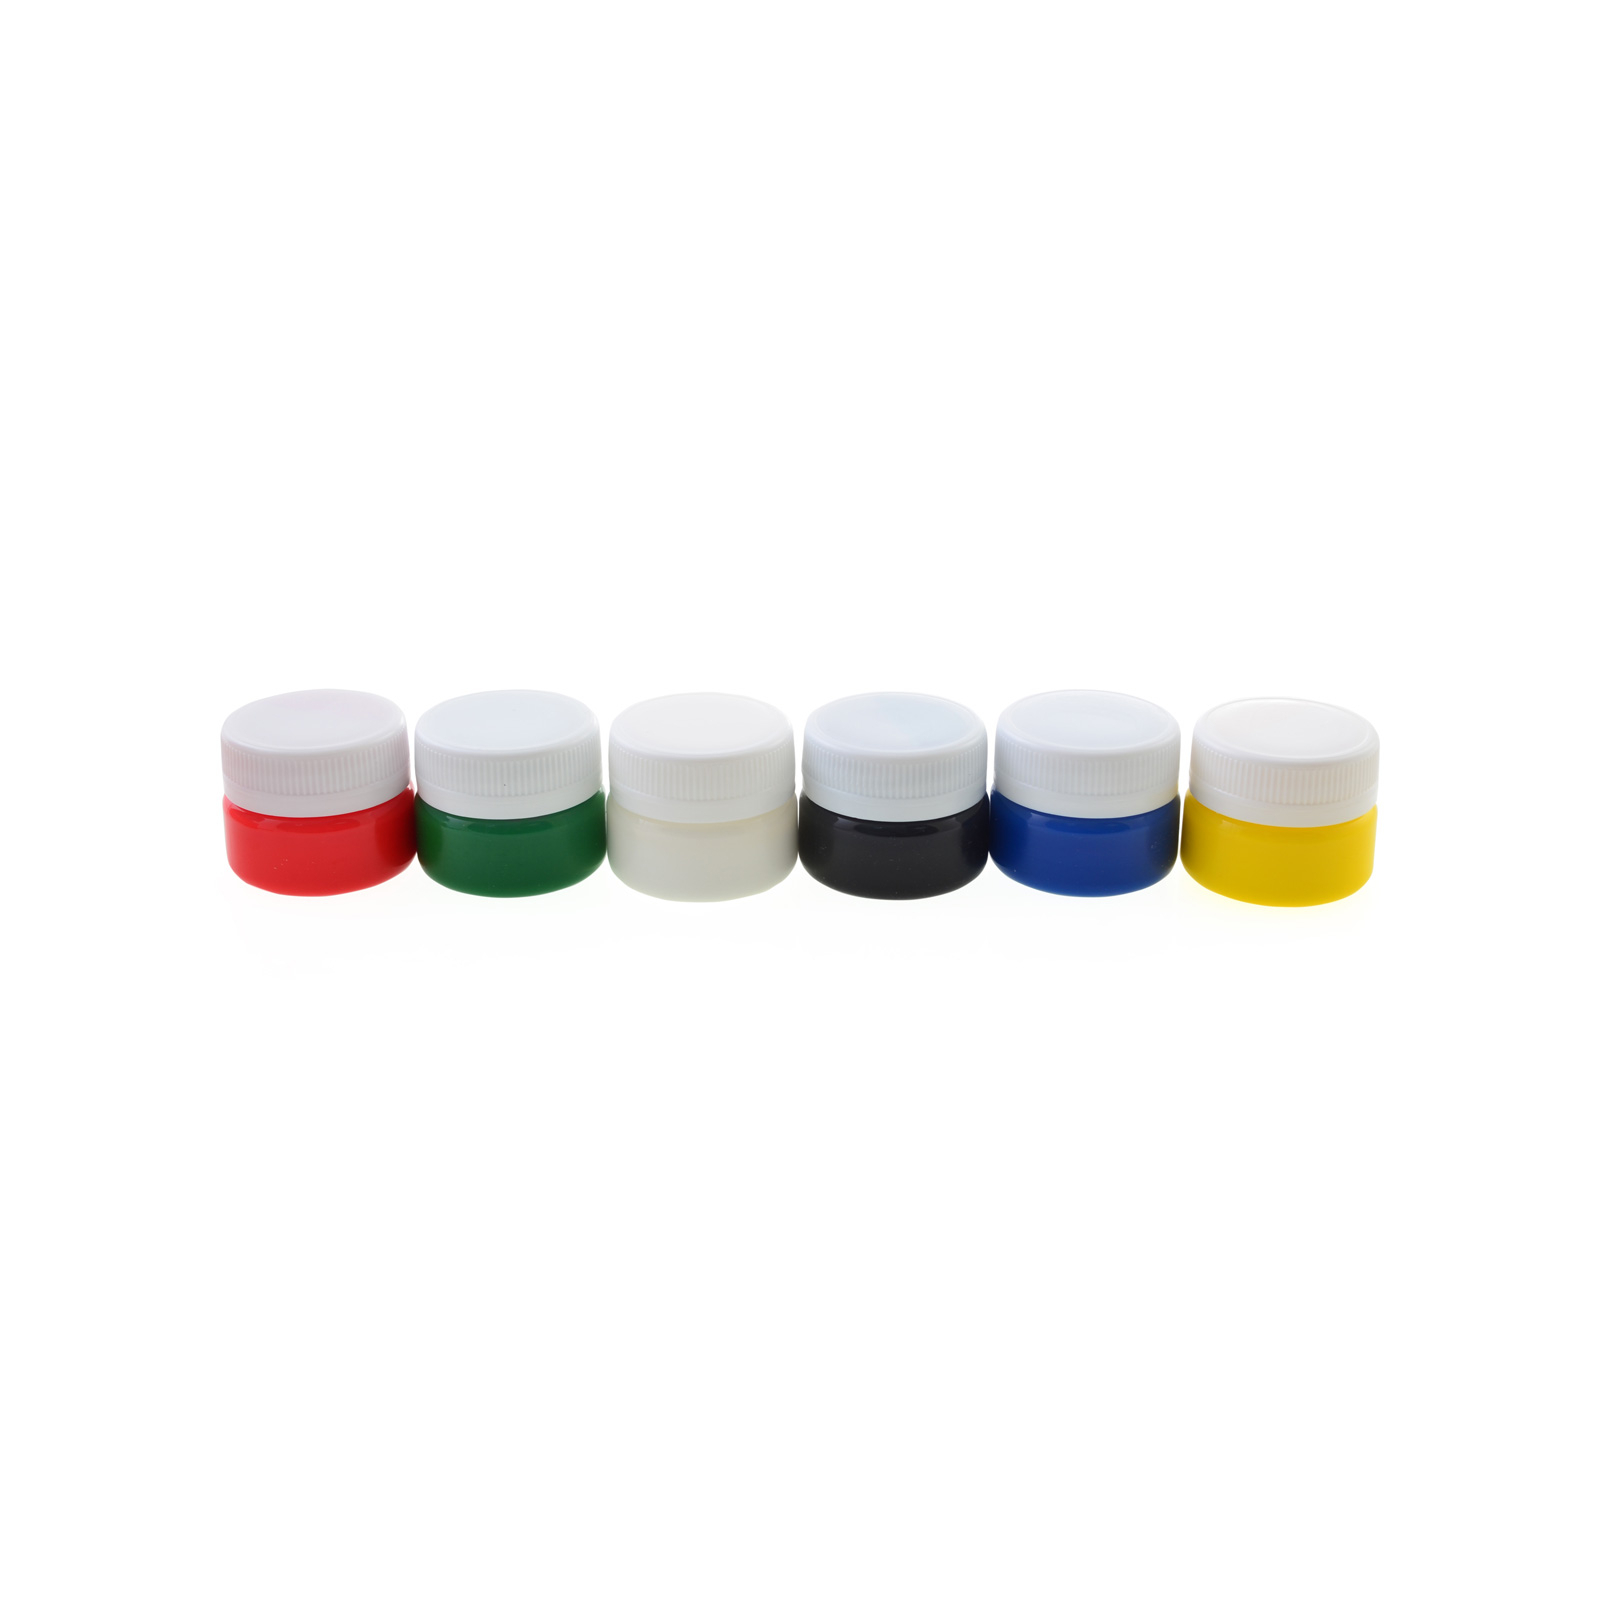 Гуашевые краски Невская палитра Сонет гуашевые 6 цветов 20 мл баночки (352590) изображение 2